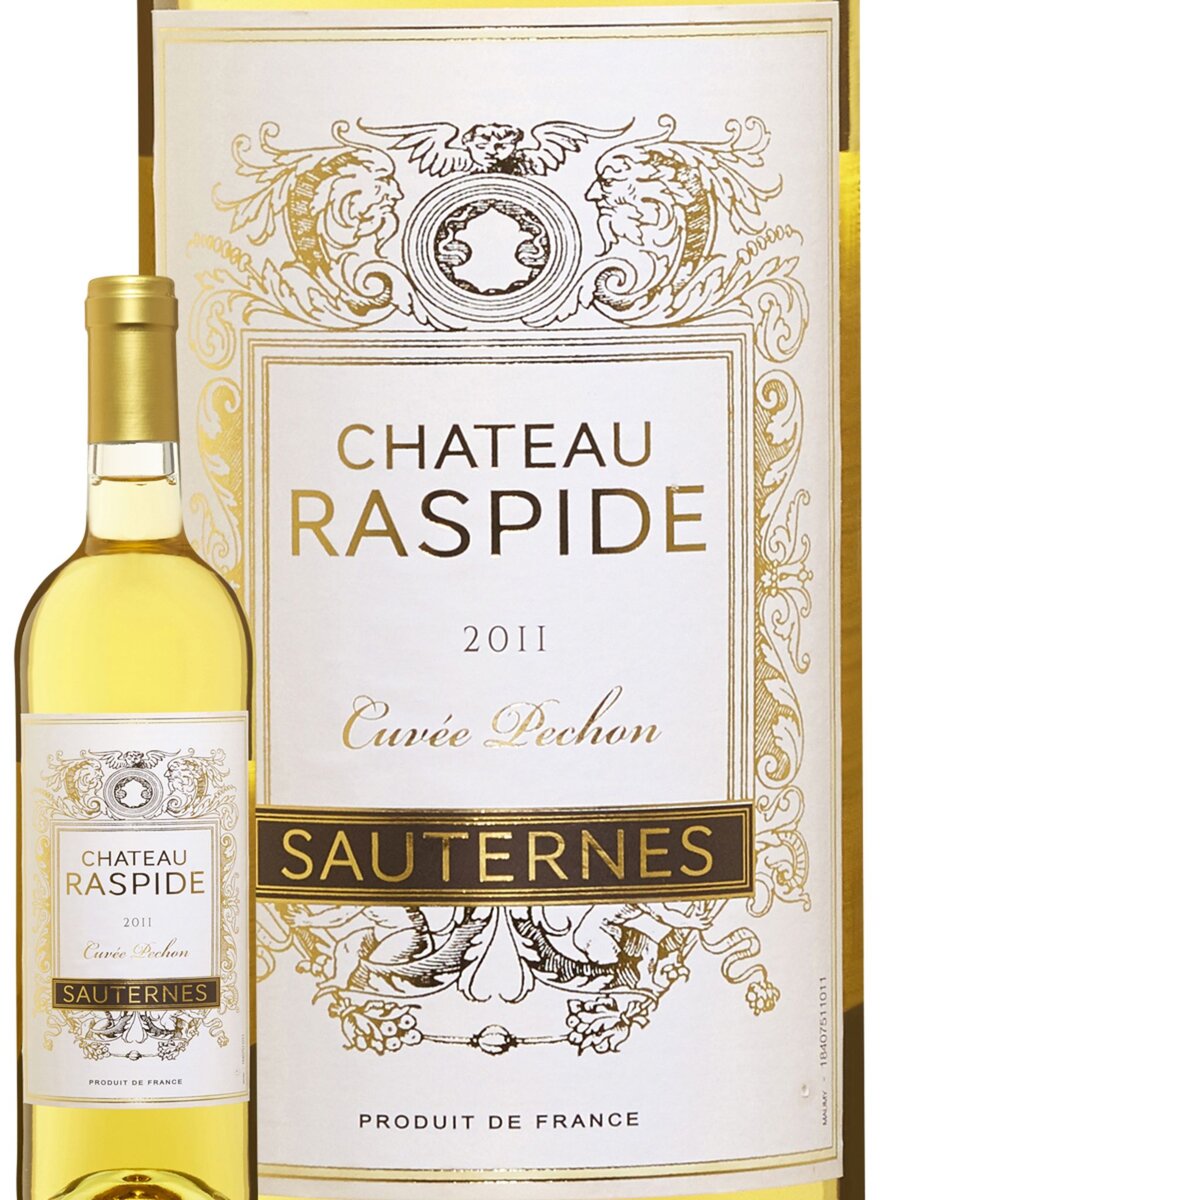 Château Raspide Sauternes Cuvée Pechon Blanc 2011